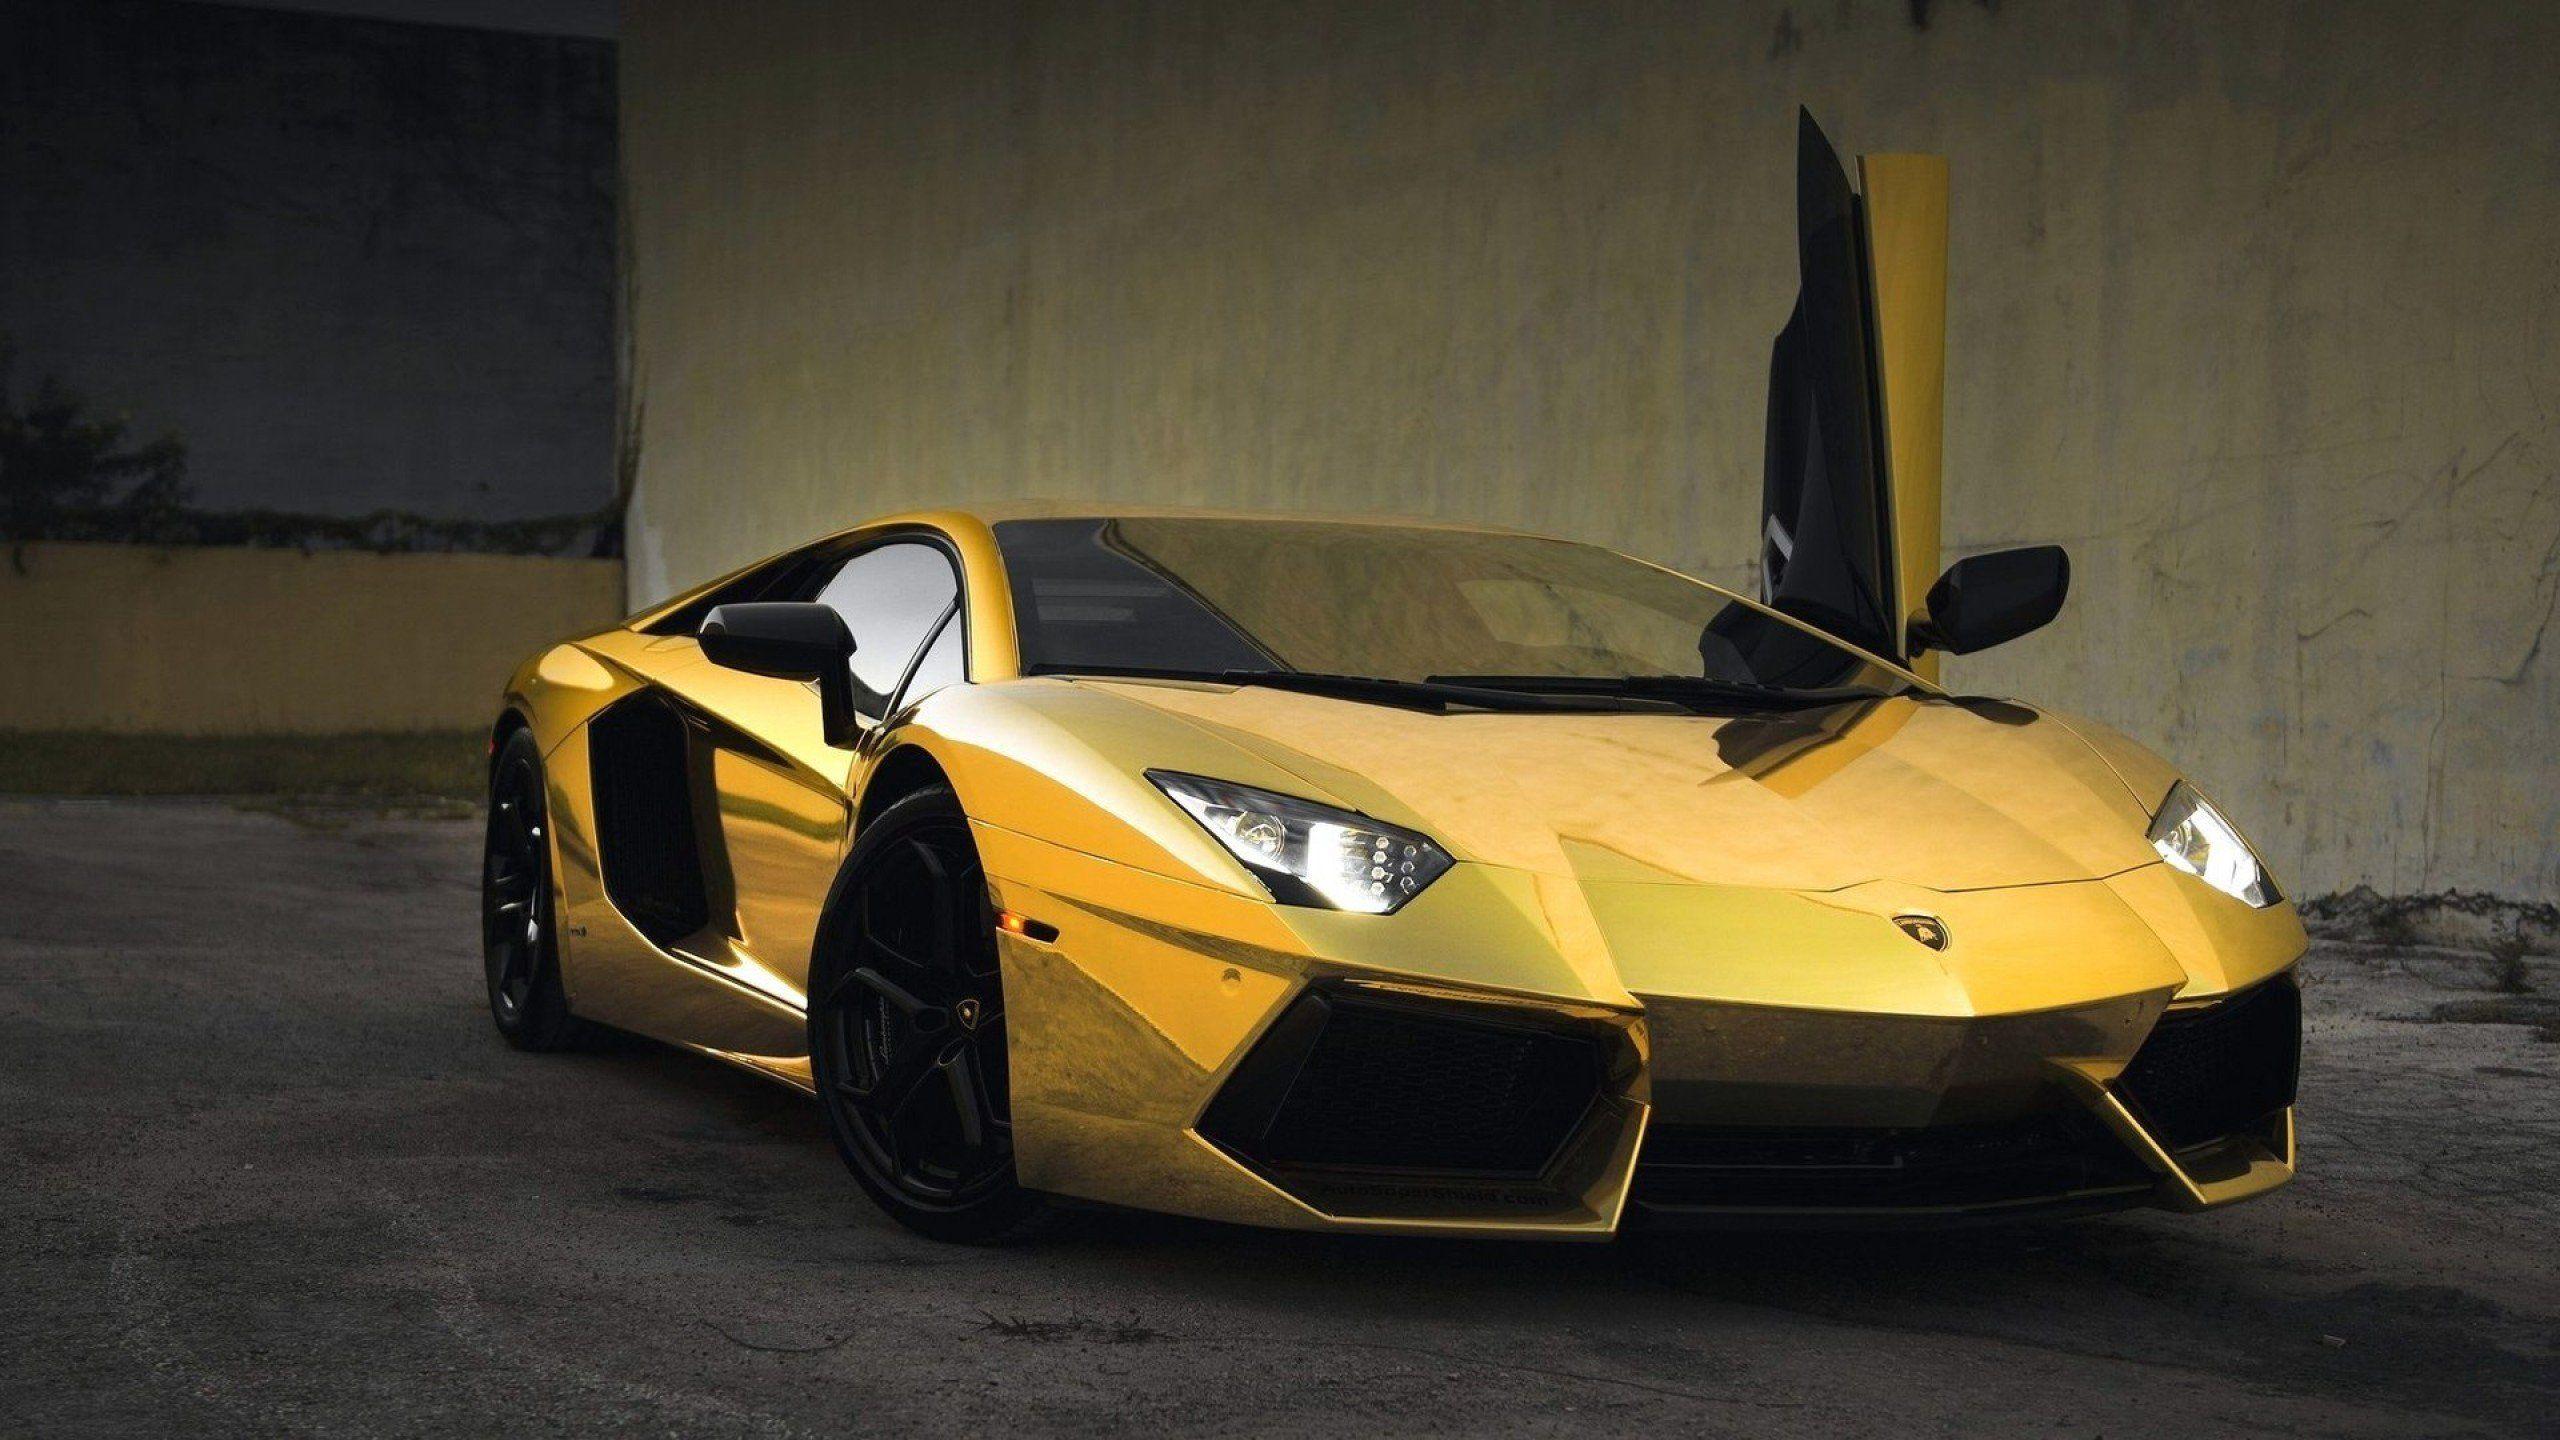 Gold Lamborghini Wallpapers - Wallpaper Cave